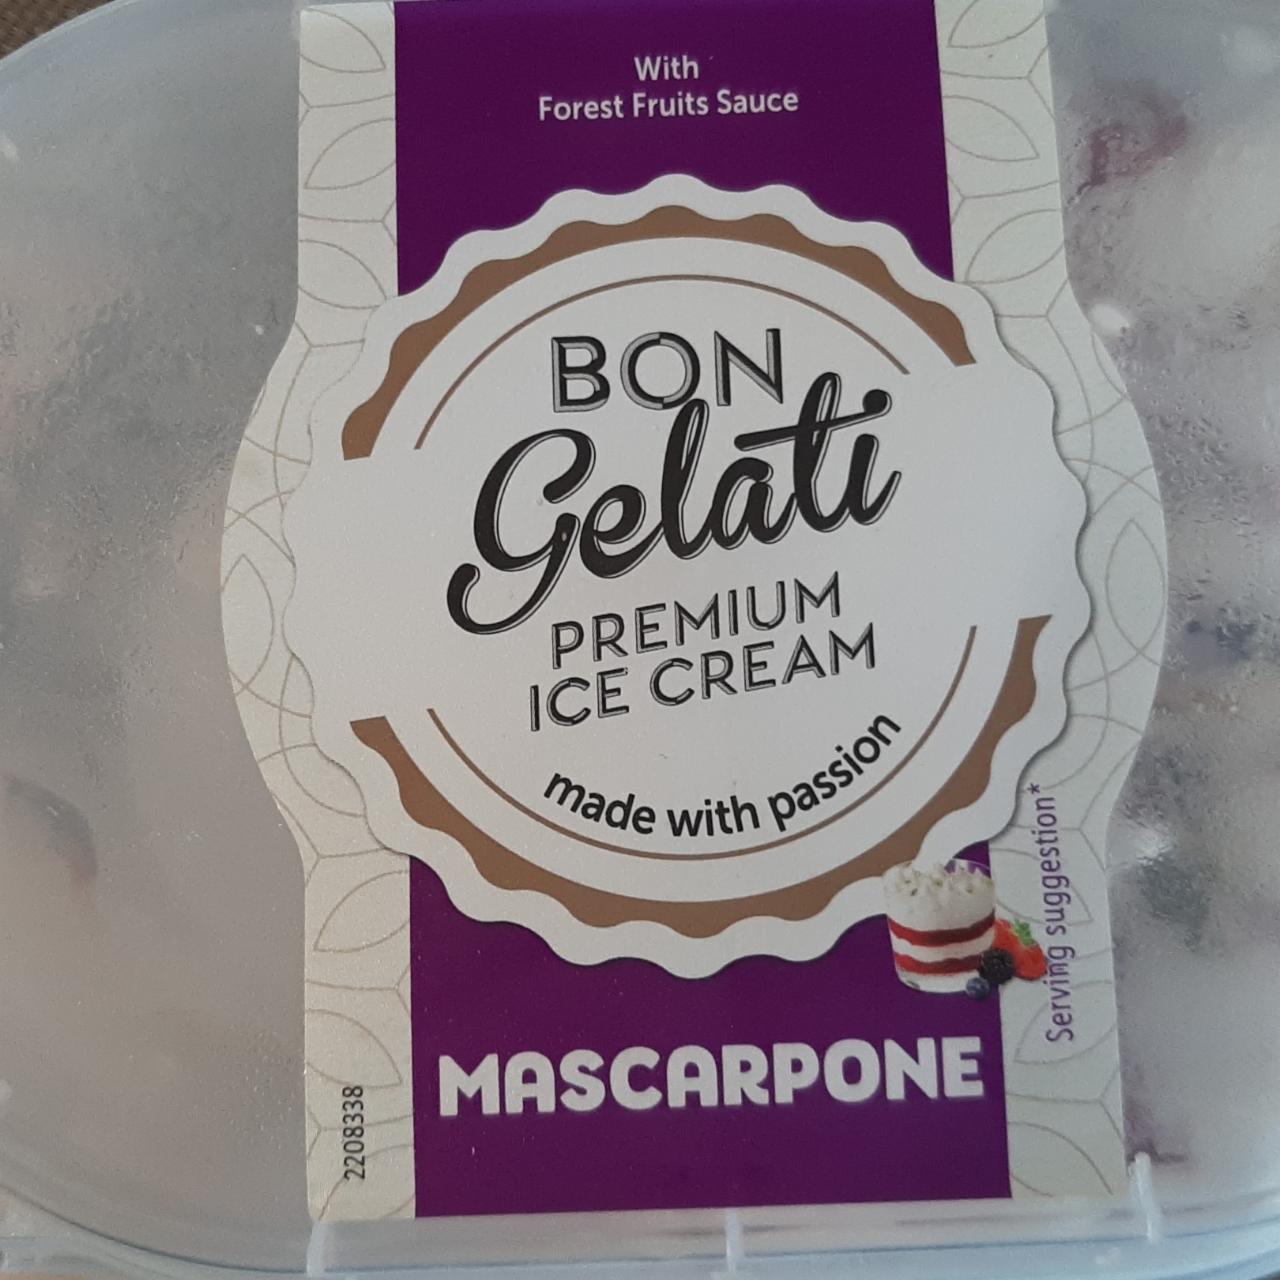 Képek - Premium ice cream Mascarpone Bon Gelati